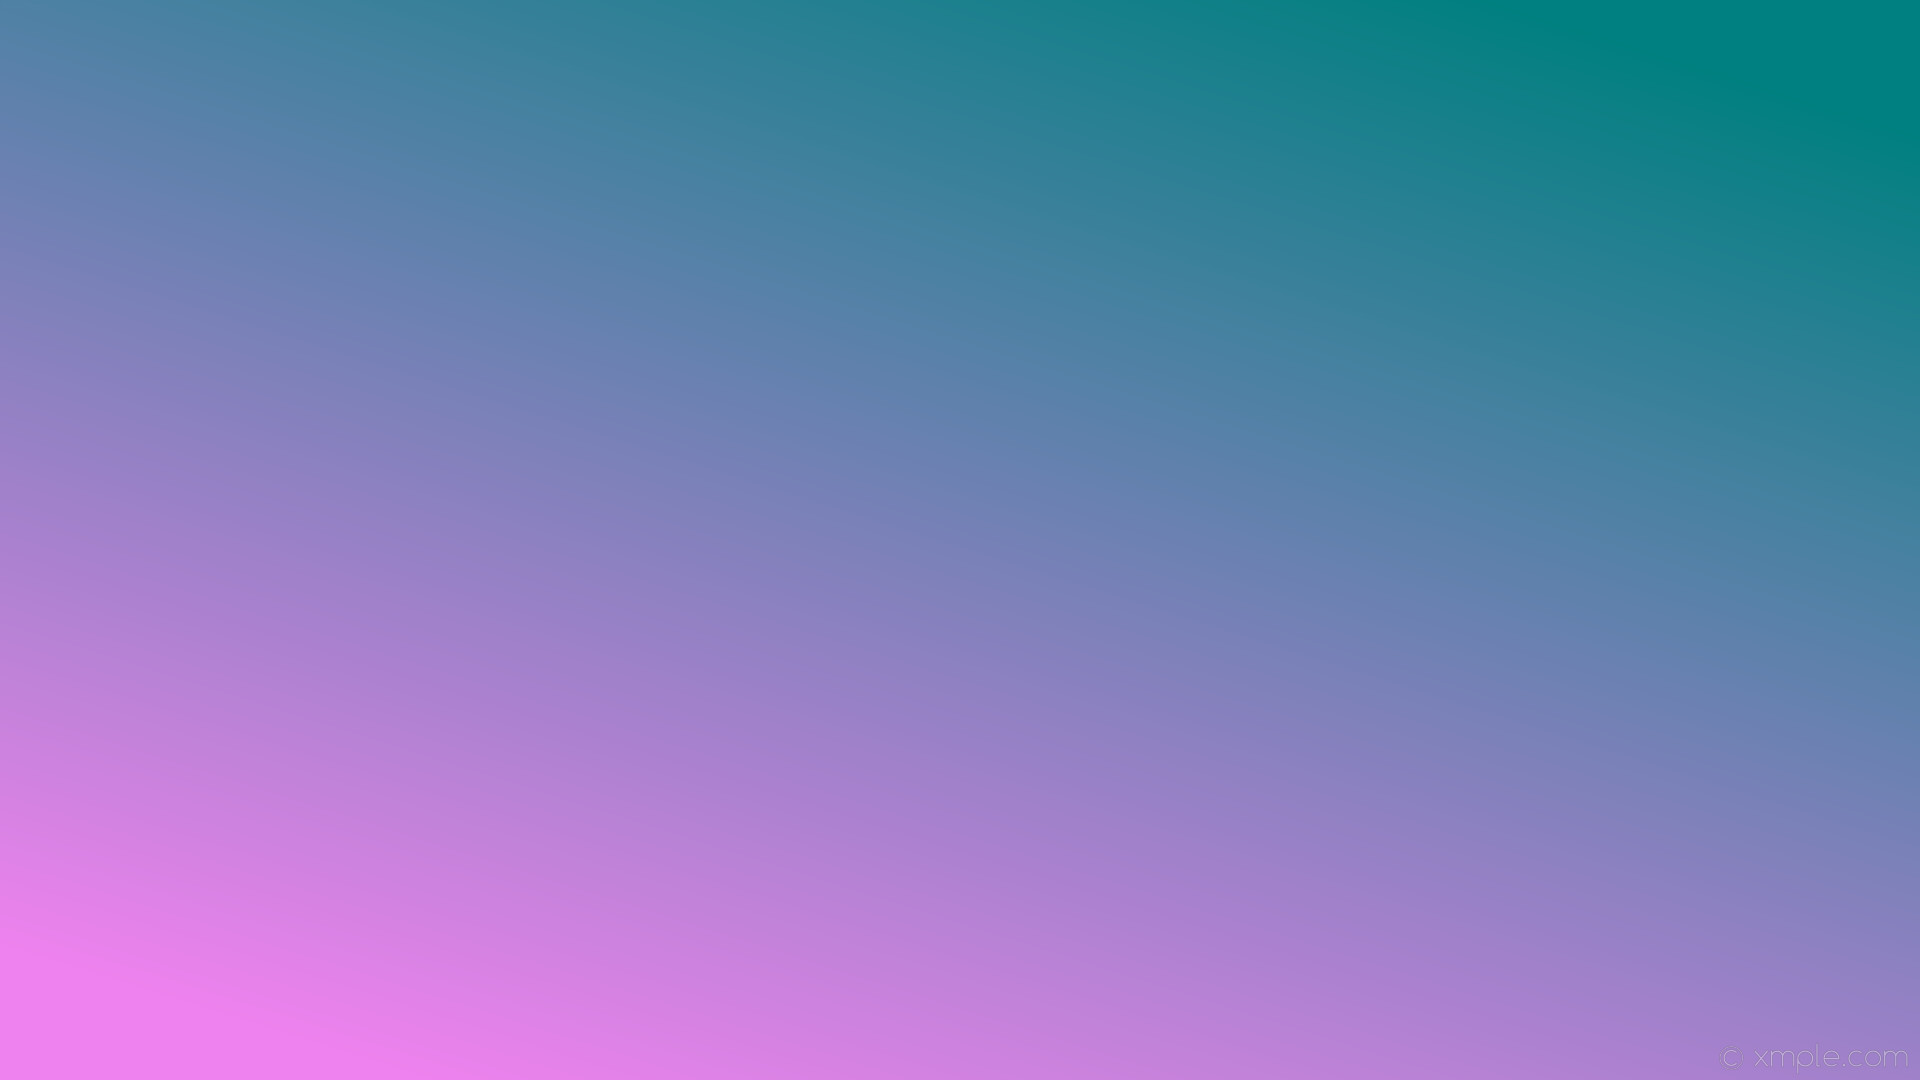 1920x1080 wallpaper green linear purple gradient violet teal #ee82ee #008080 225Â°